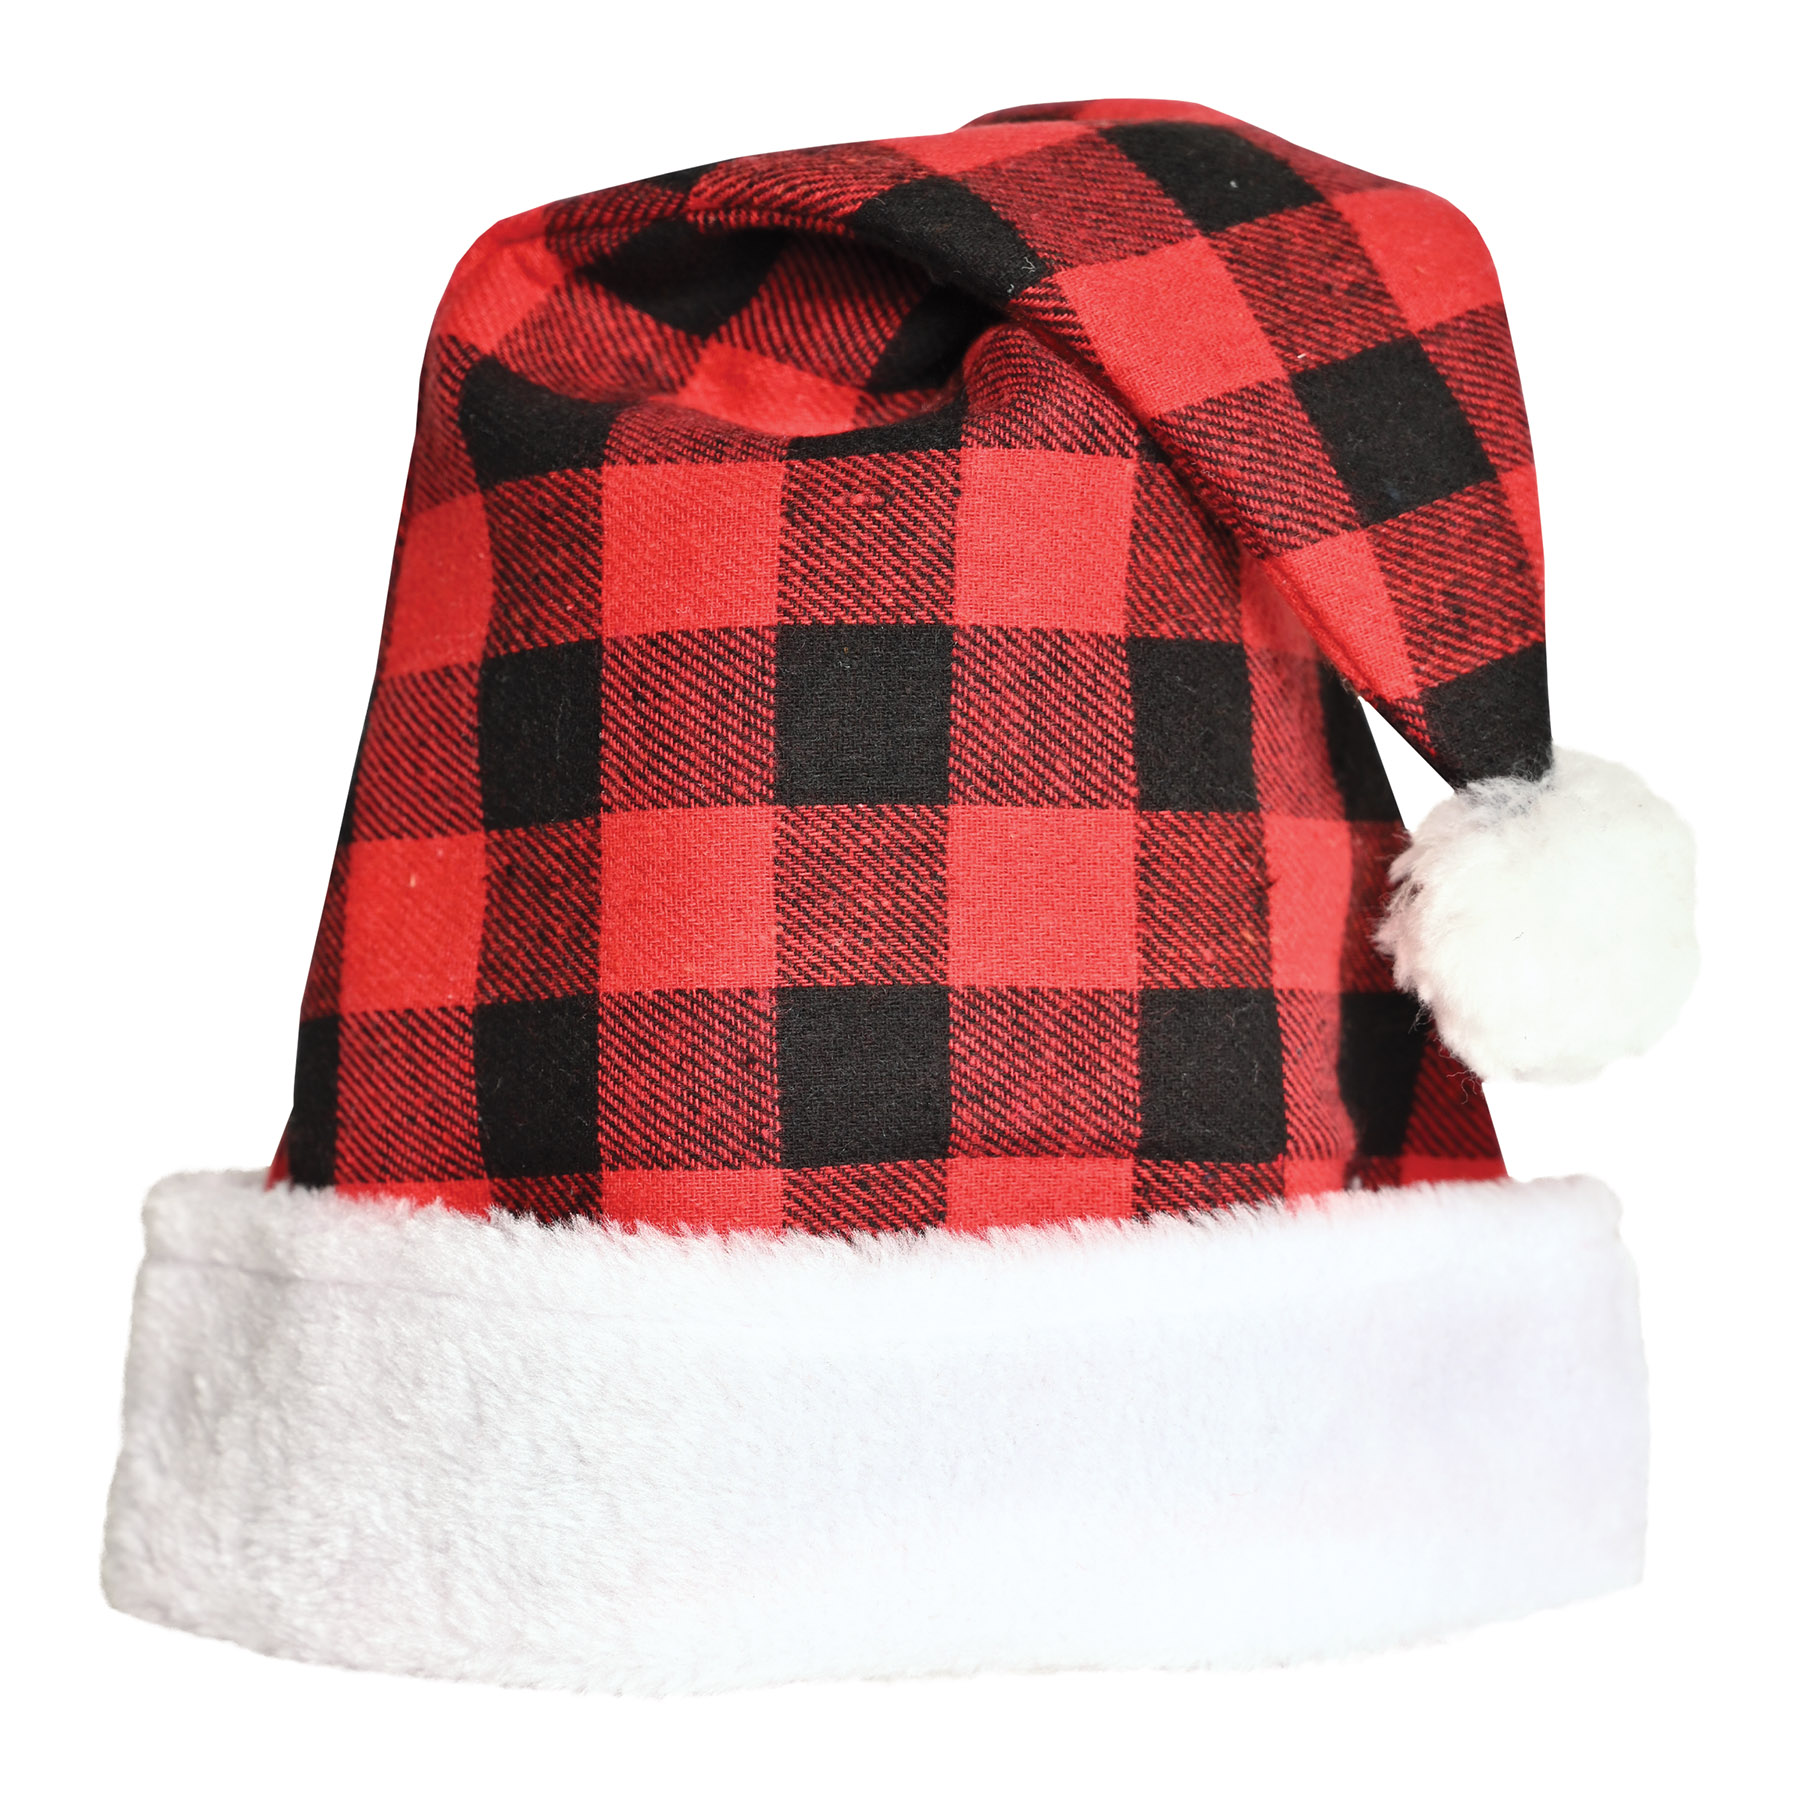 Plaid Santa HAT